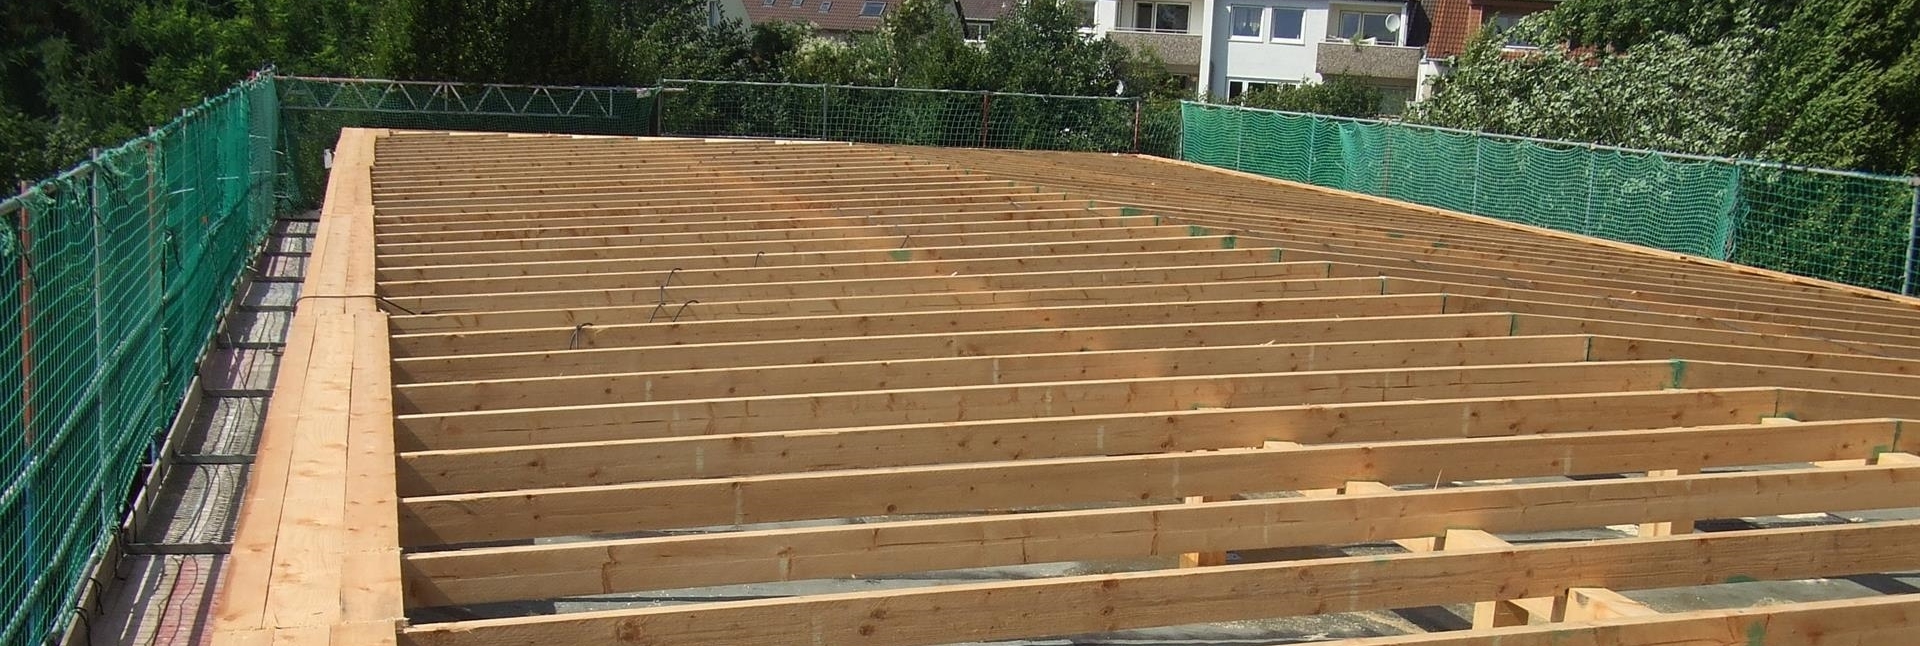 Offener Dachstuhl bei einem Flachdach aus Holz